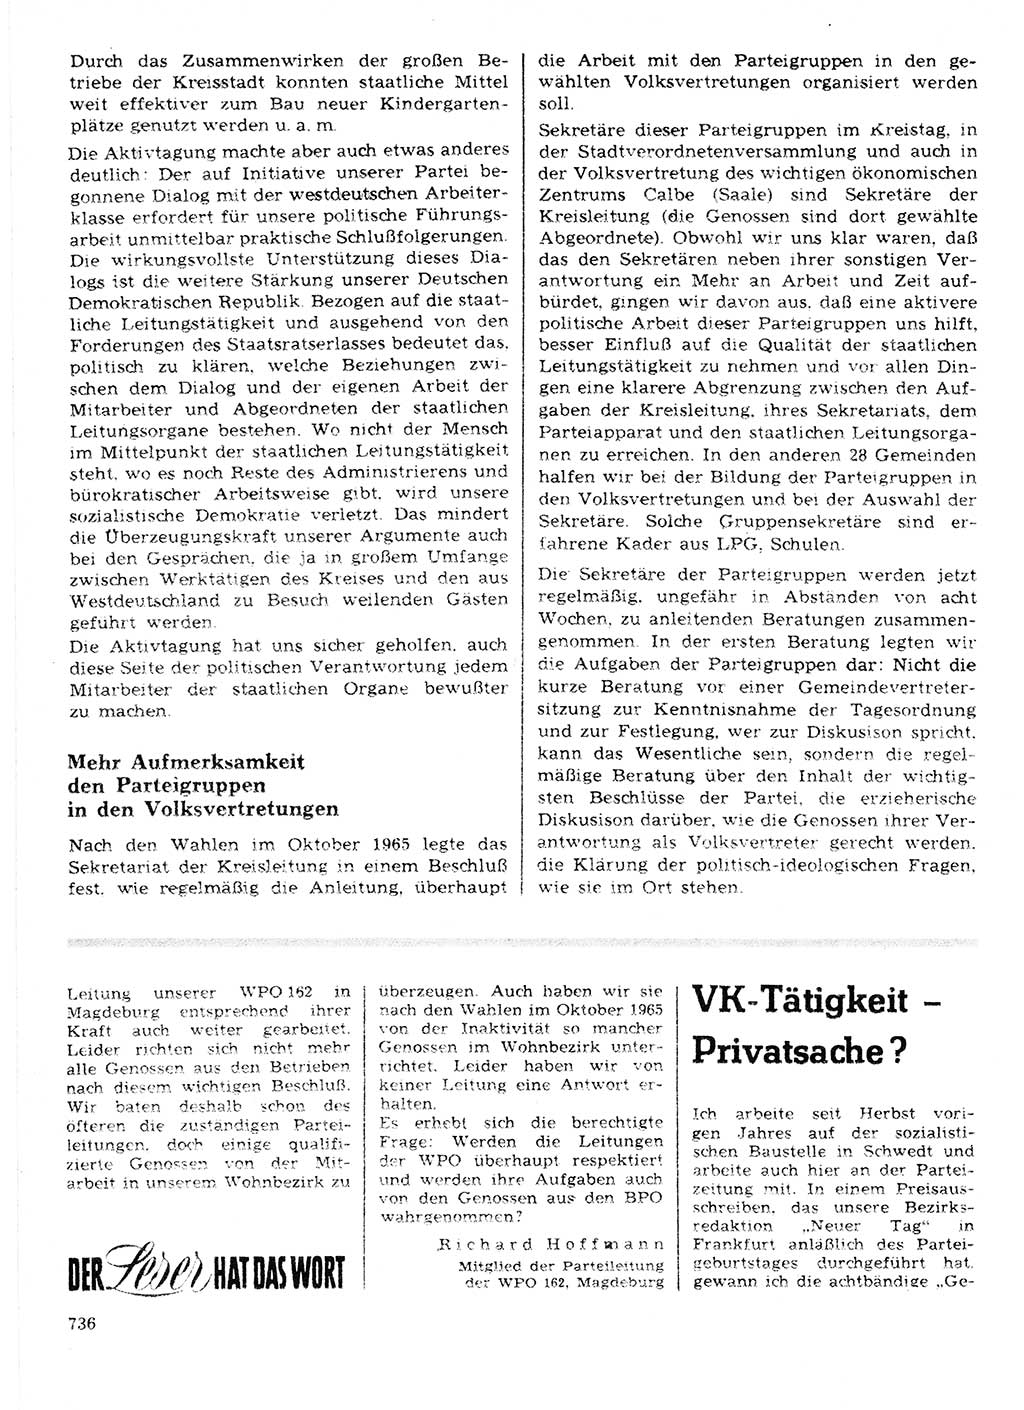 Neuer Weg (NW), Organ des Zentralkomitees (ZK) der SED (Sozialistische Einheitspartei Deutschlands) für Fragen des Parteilebens, 21. Jahrgang [Deutsche Demokratische Republik (DDR)] 1966, Seite 736 (NW ZK SED DDR 1966, S. 736)